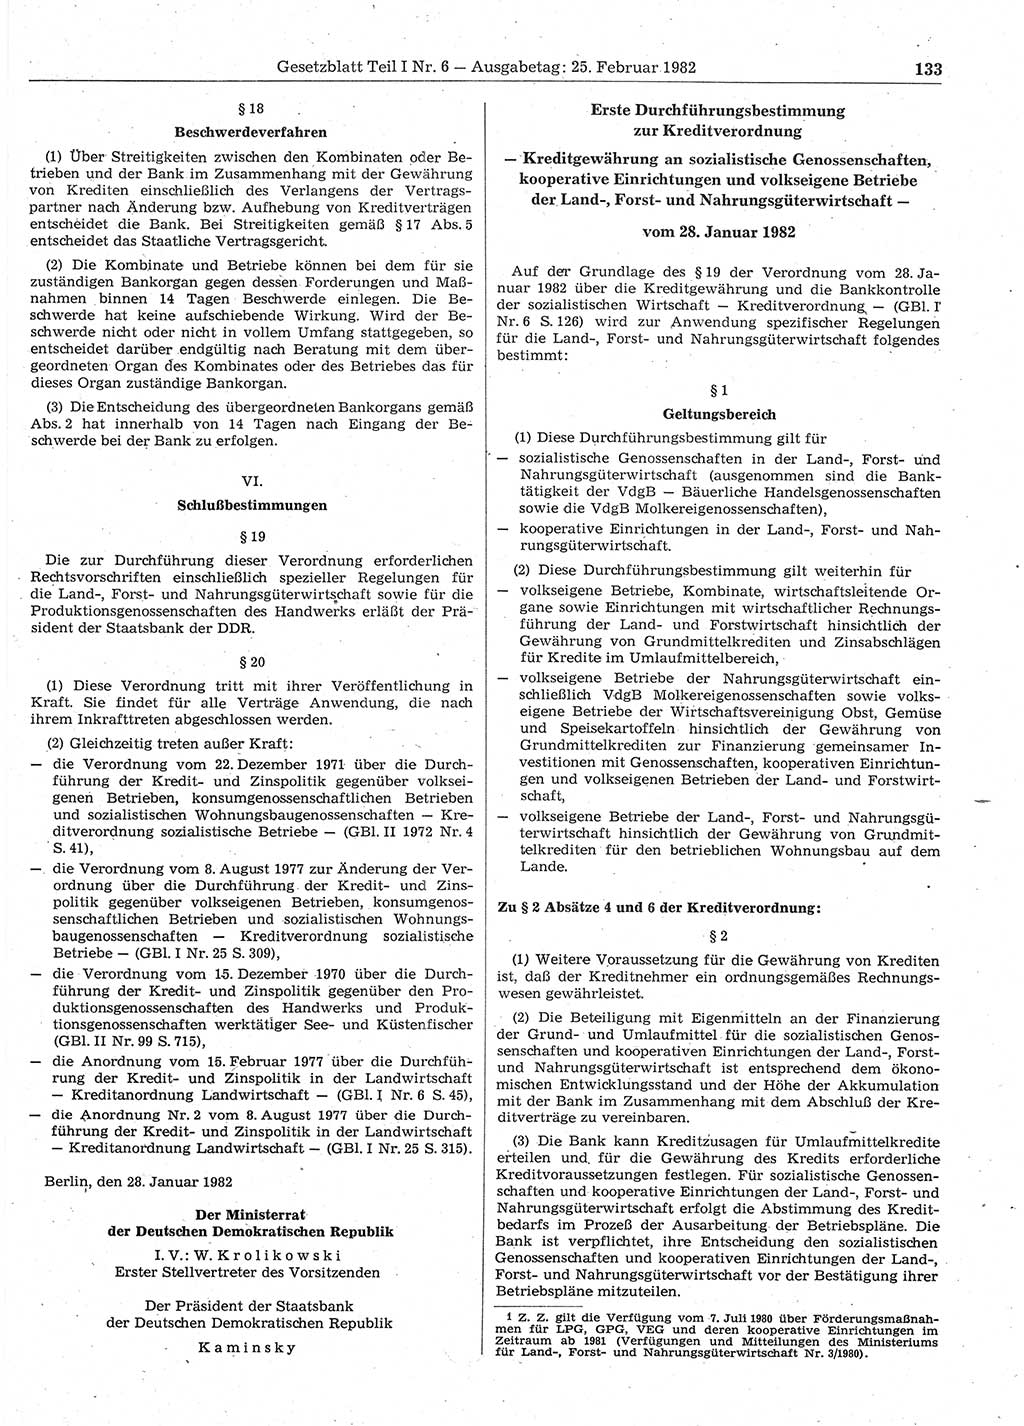 Gesetzblatt (GBl.) der Deutschen Demokratischen Republik (DDR) Teil Ⅰ 1982, Seite 133 (GBl. DDR Ⅰ 1982, S. 133)